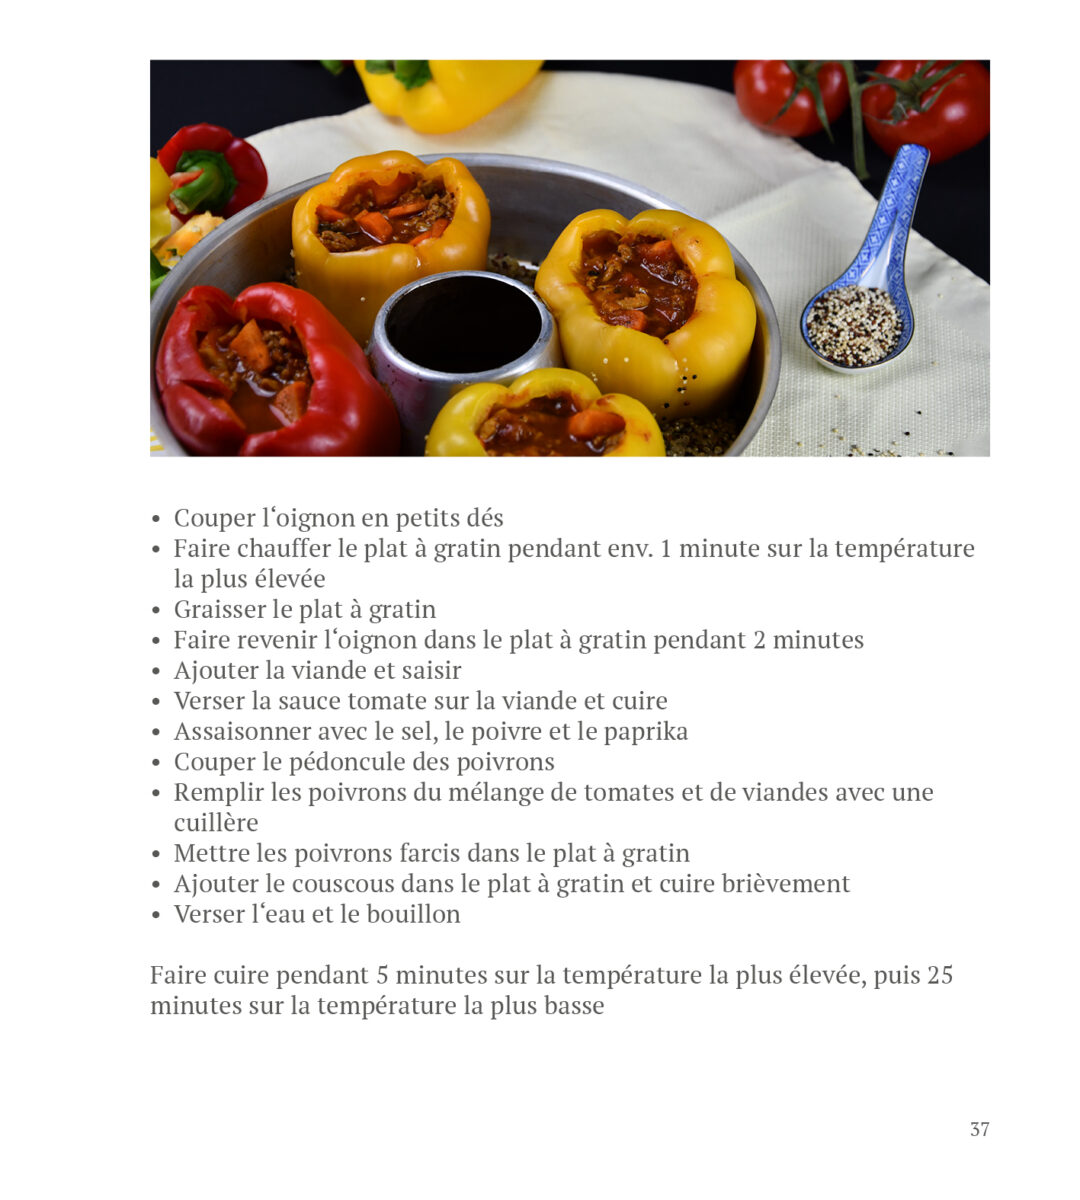 OMNIA Kochbuch auf französisch kaufen bei togetherontour